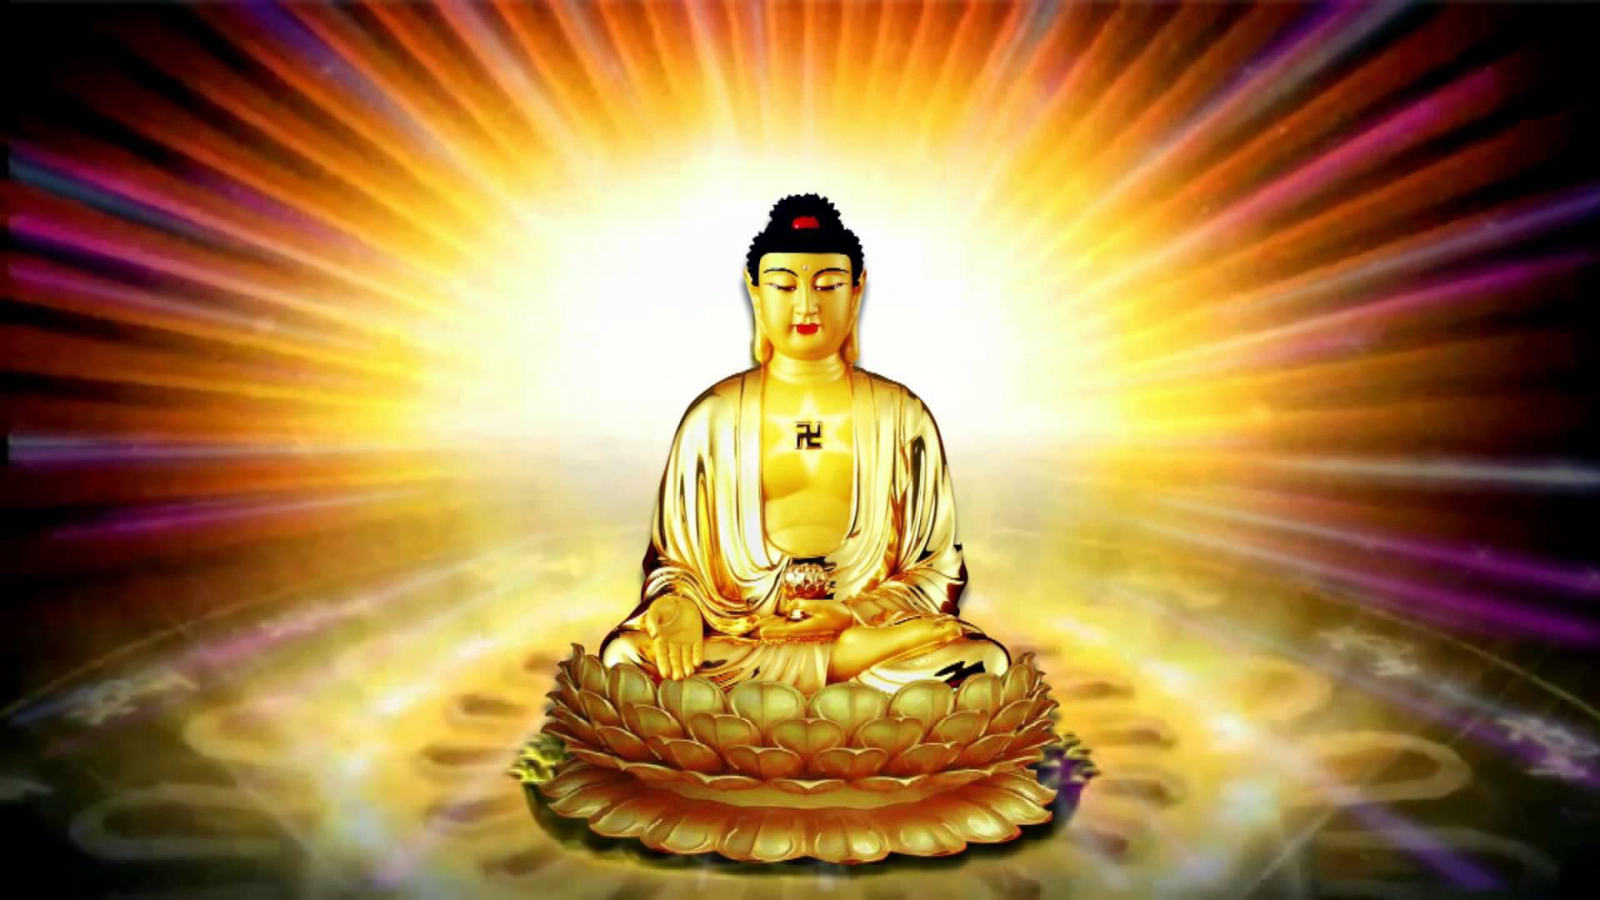 Ngôi báu thứ nhất trong Tam Bảo là Phật Bảo, ánh hào quang của vị Thầy vĩ đại soi sáng giống như ngọn hải đăng hướng dẫn và soi sáng nhân loại